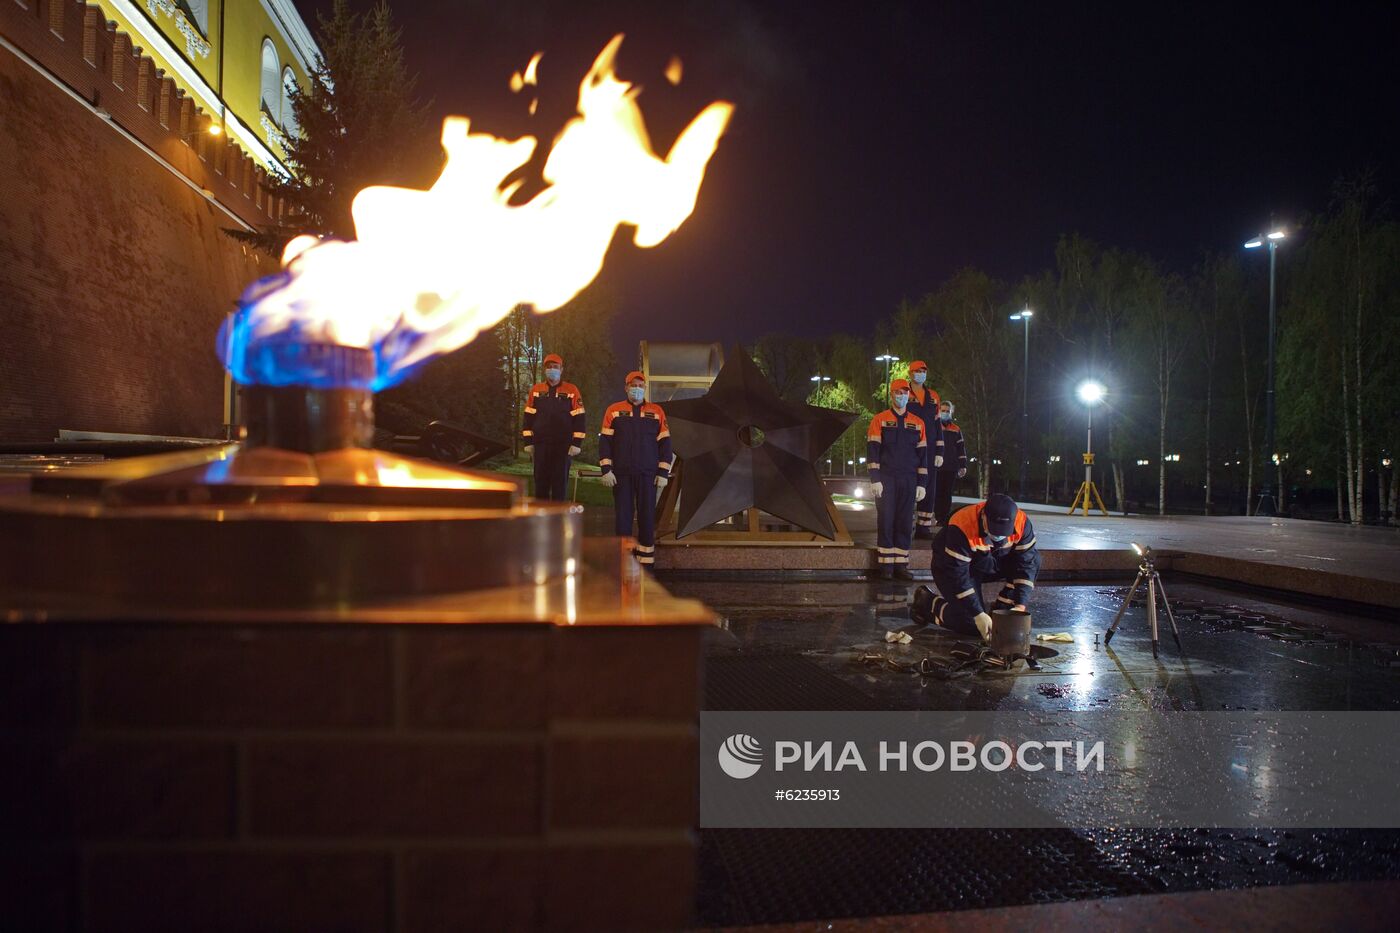 Профилактика горелки Вечного огня в Александровском саду